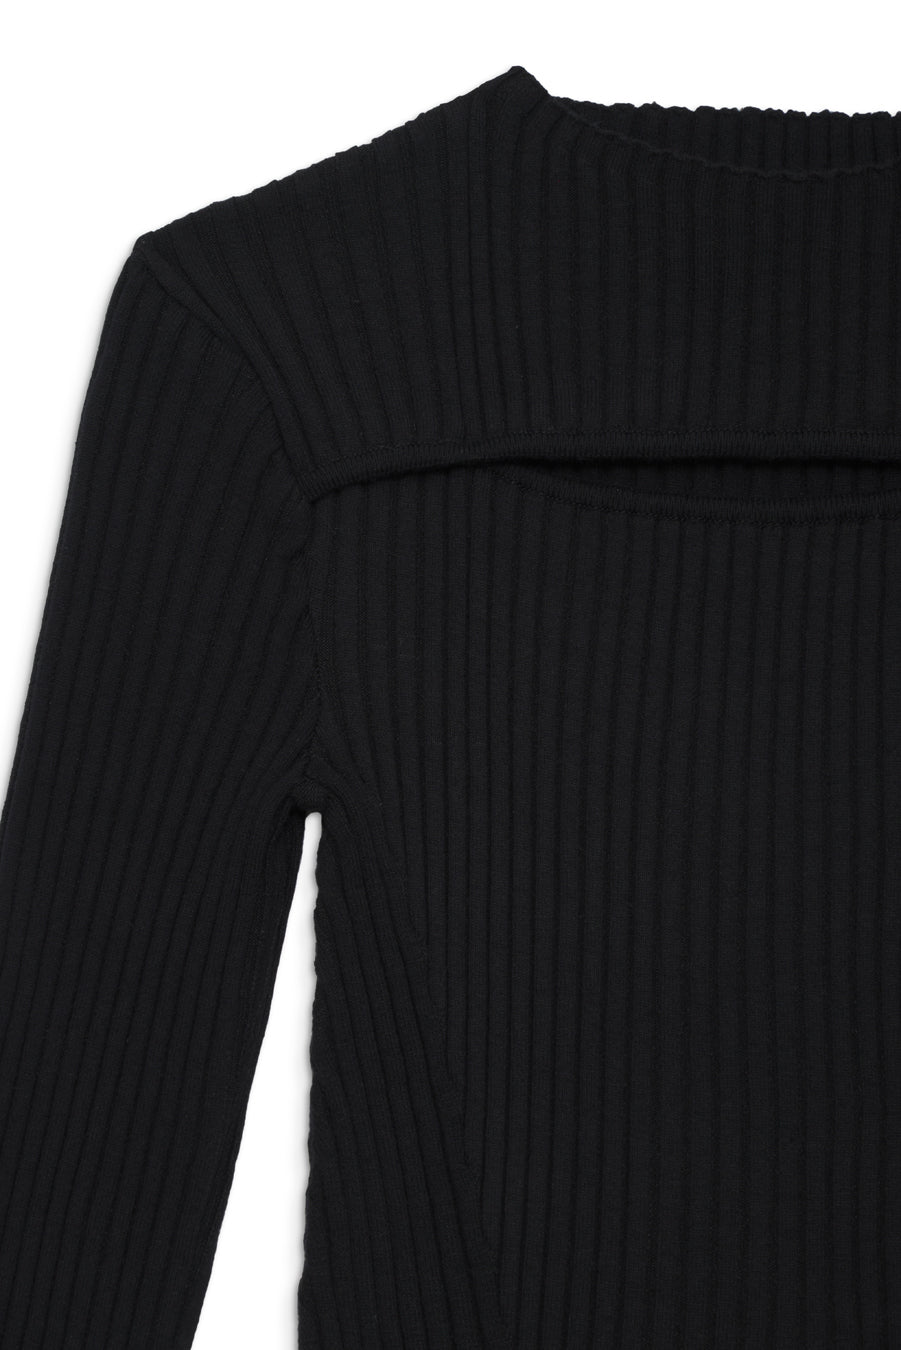 Anine Bing - Lora Sweater in Black